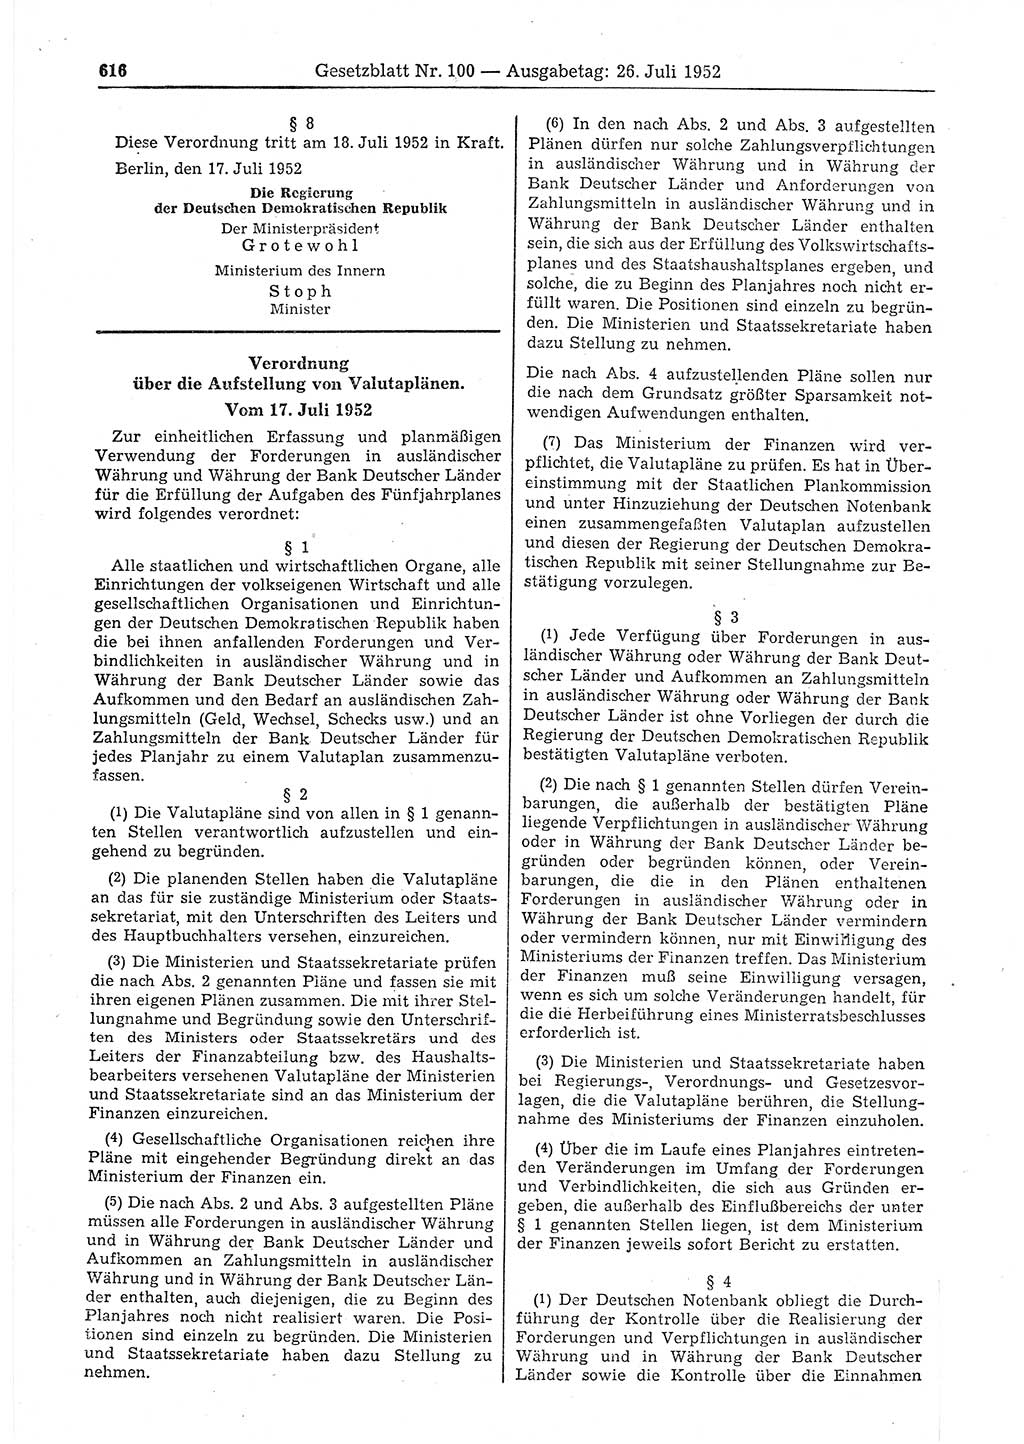 Gesetzblatt (GBl.) der Deutschen Demokratischen Republik (DDR) 1952, Seite 616 (GBl. DDR 1952, S. 616)